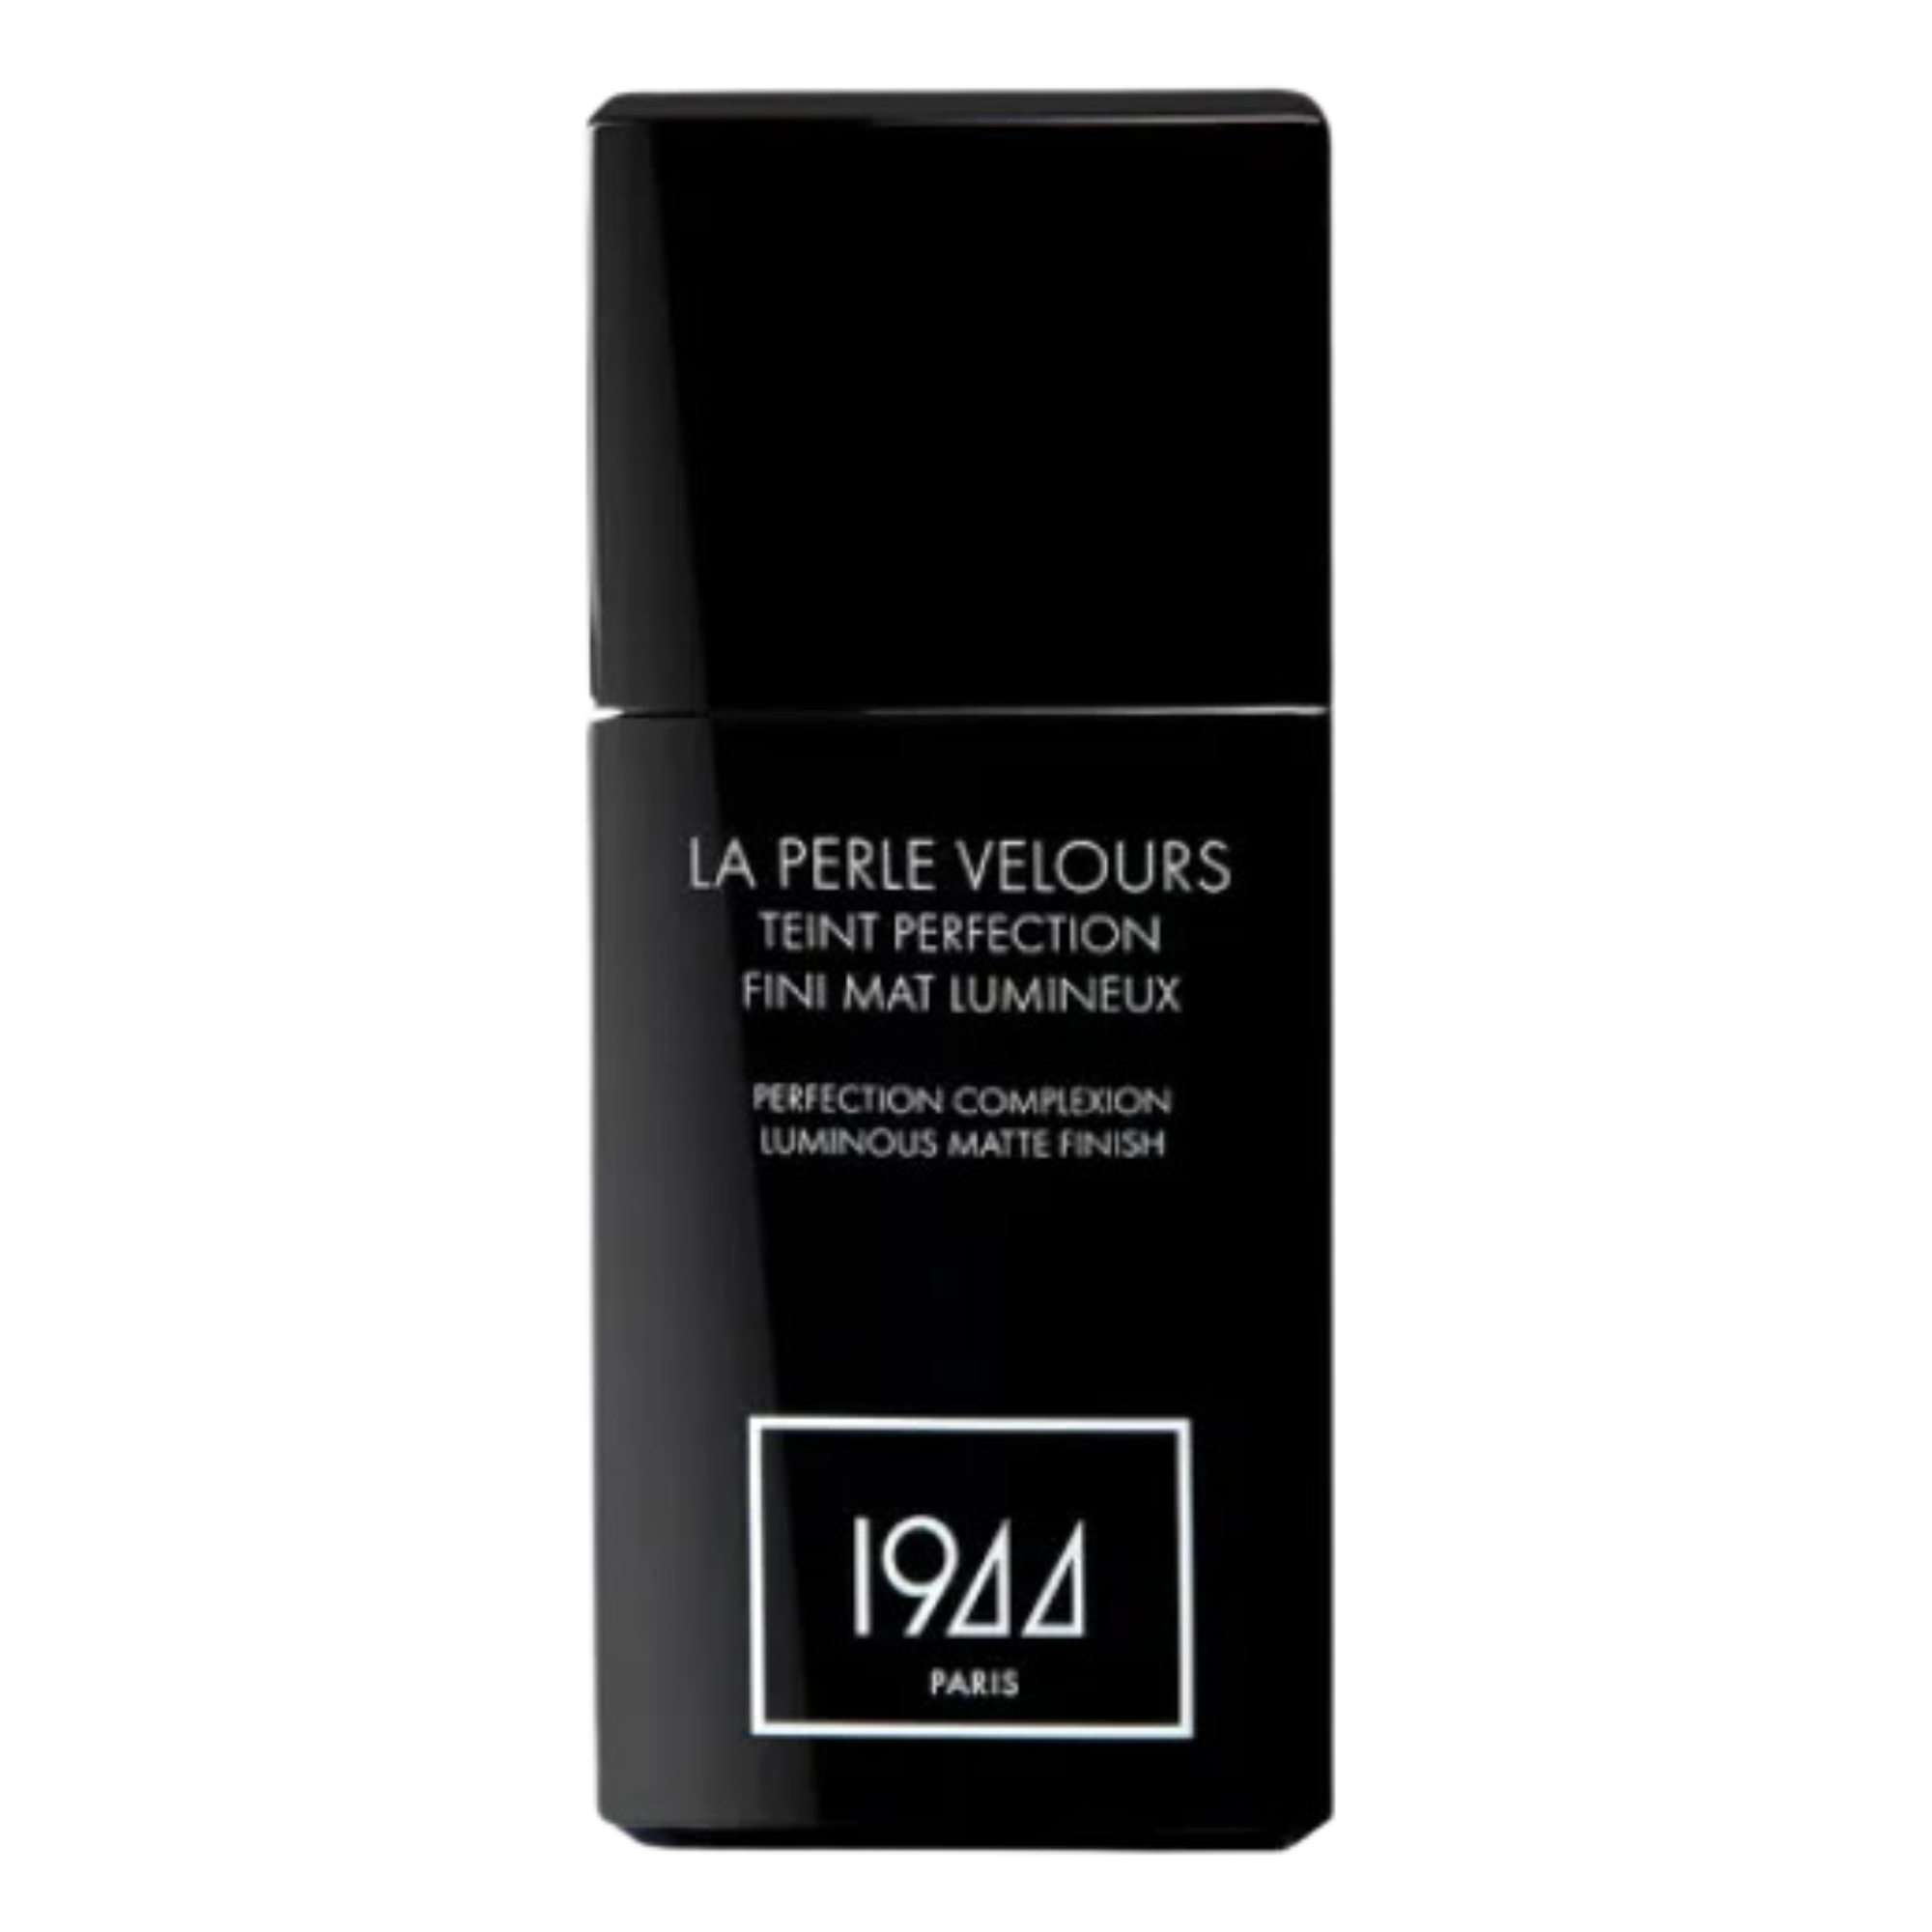 Тональный крем для лица ft208 grind 1944 Paris La Perle Velours, 30 мл